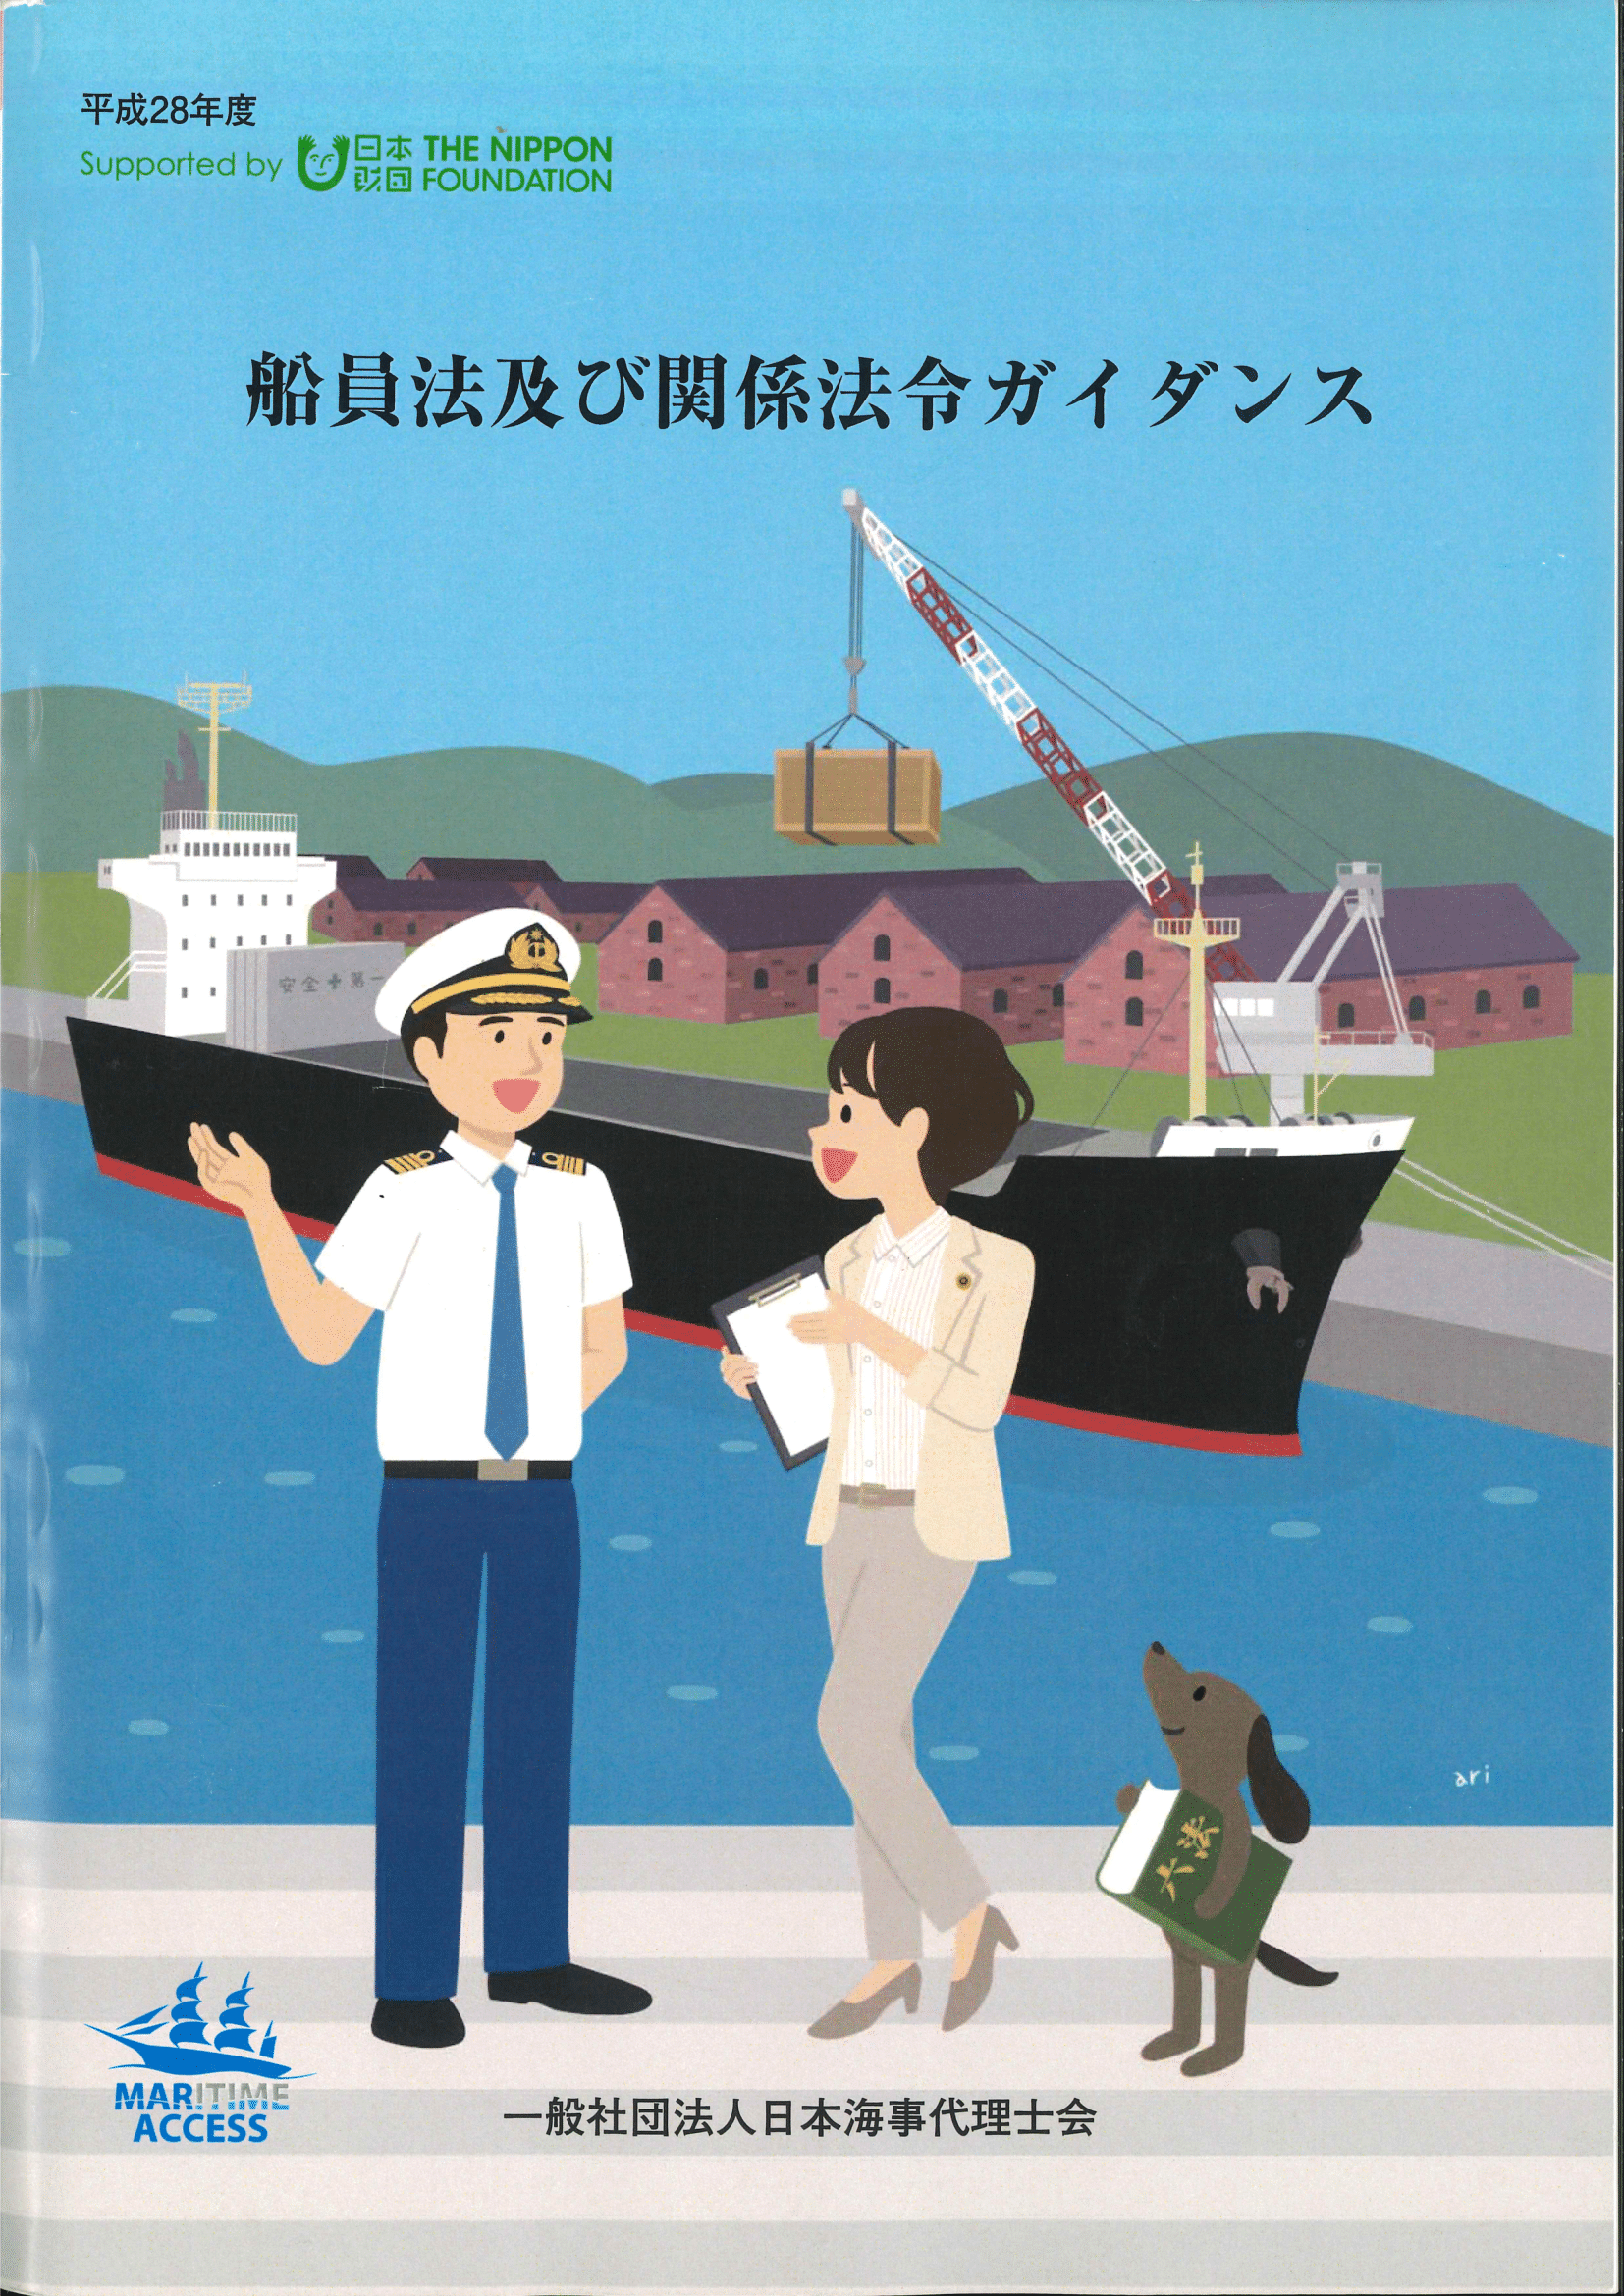 船員法及び関係法令ガイダンス（平成30年3月発行）